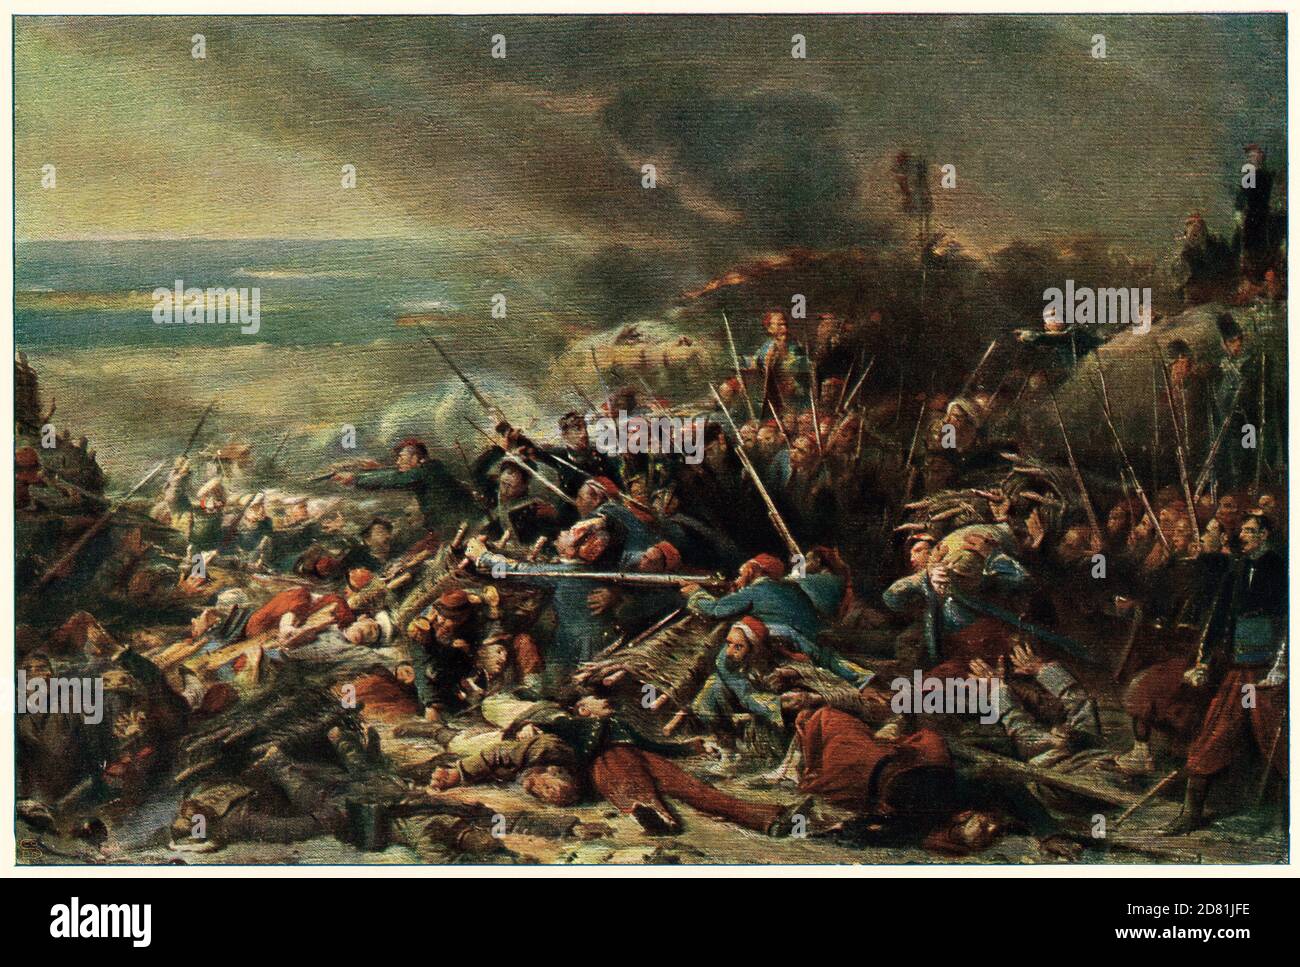 Los franceses atacan al ejército ruso en la batalla de Malakoff, el sitio de Sebastopol, la guerra de Crimea. Color de la media tinta de una pintura de Adolphe Yvon Foto de stock